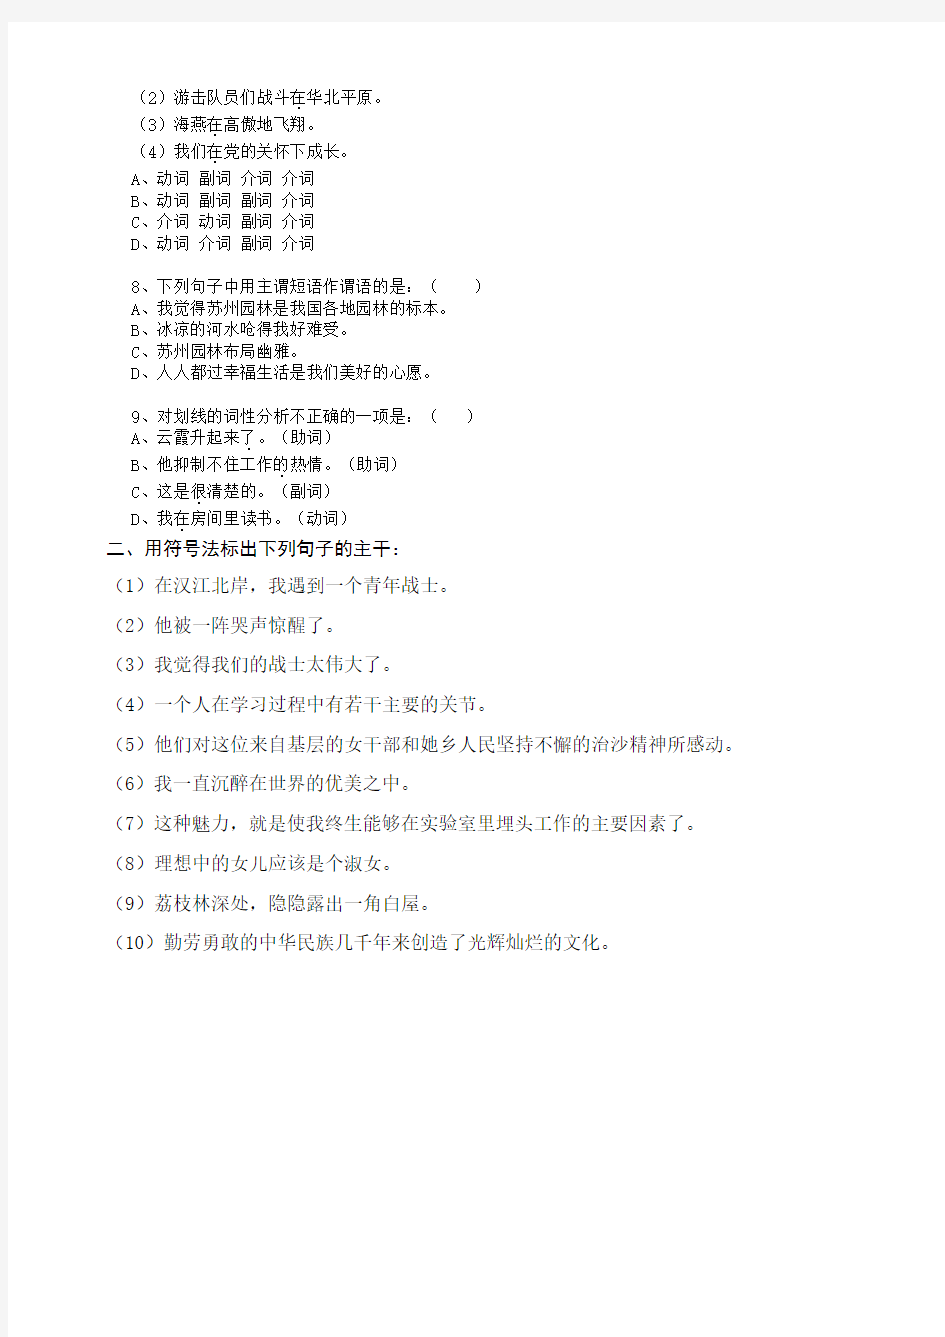 (完整版)初中语文句子成分练习题汇编